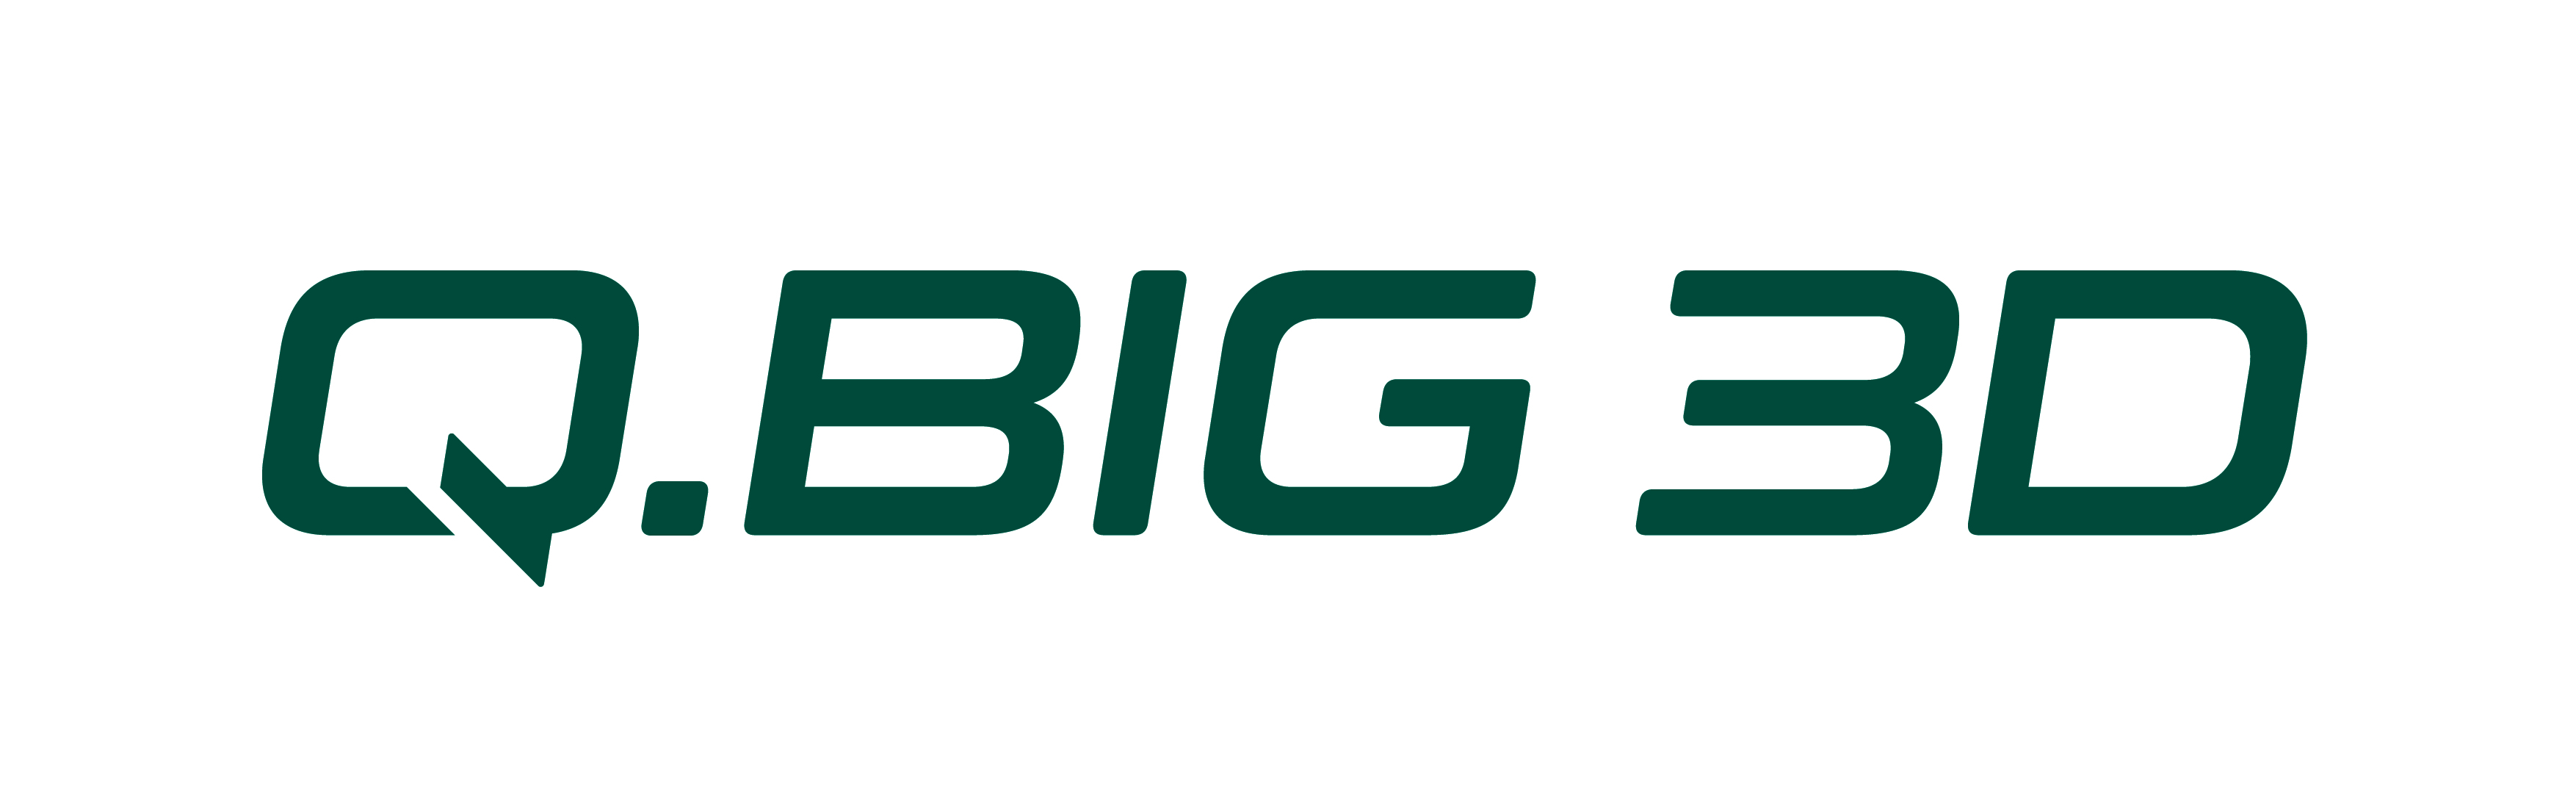 Q.BIG 3D GmbH